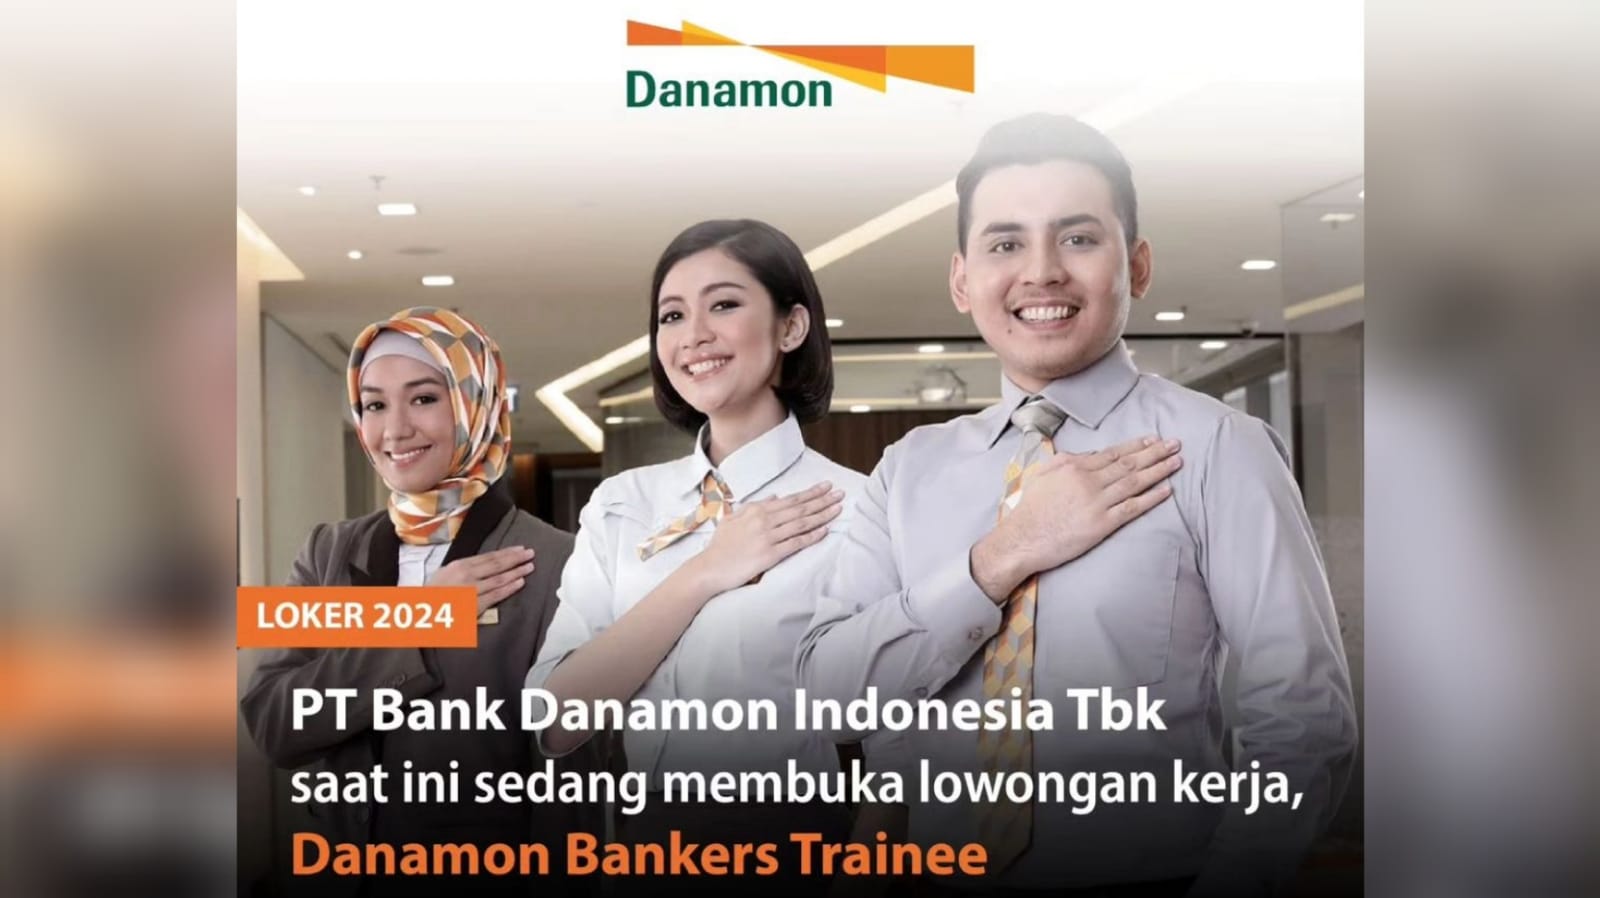 Bank Danamon Membuka Lowongan Kerja Melalui DANAMON BANKERS TRAINEE (DBT) Ini Link Pendaftaran dan Syaratnya